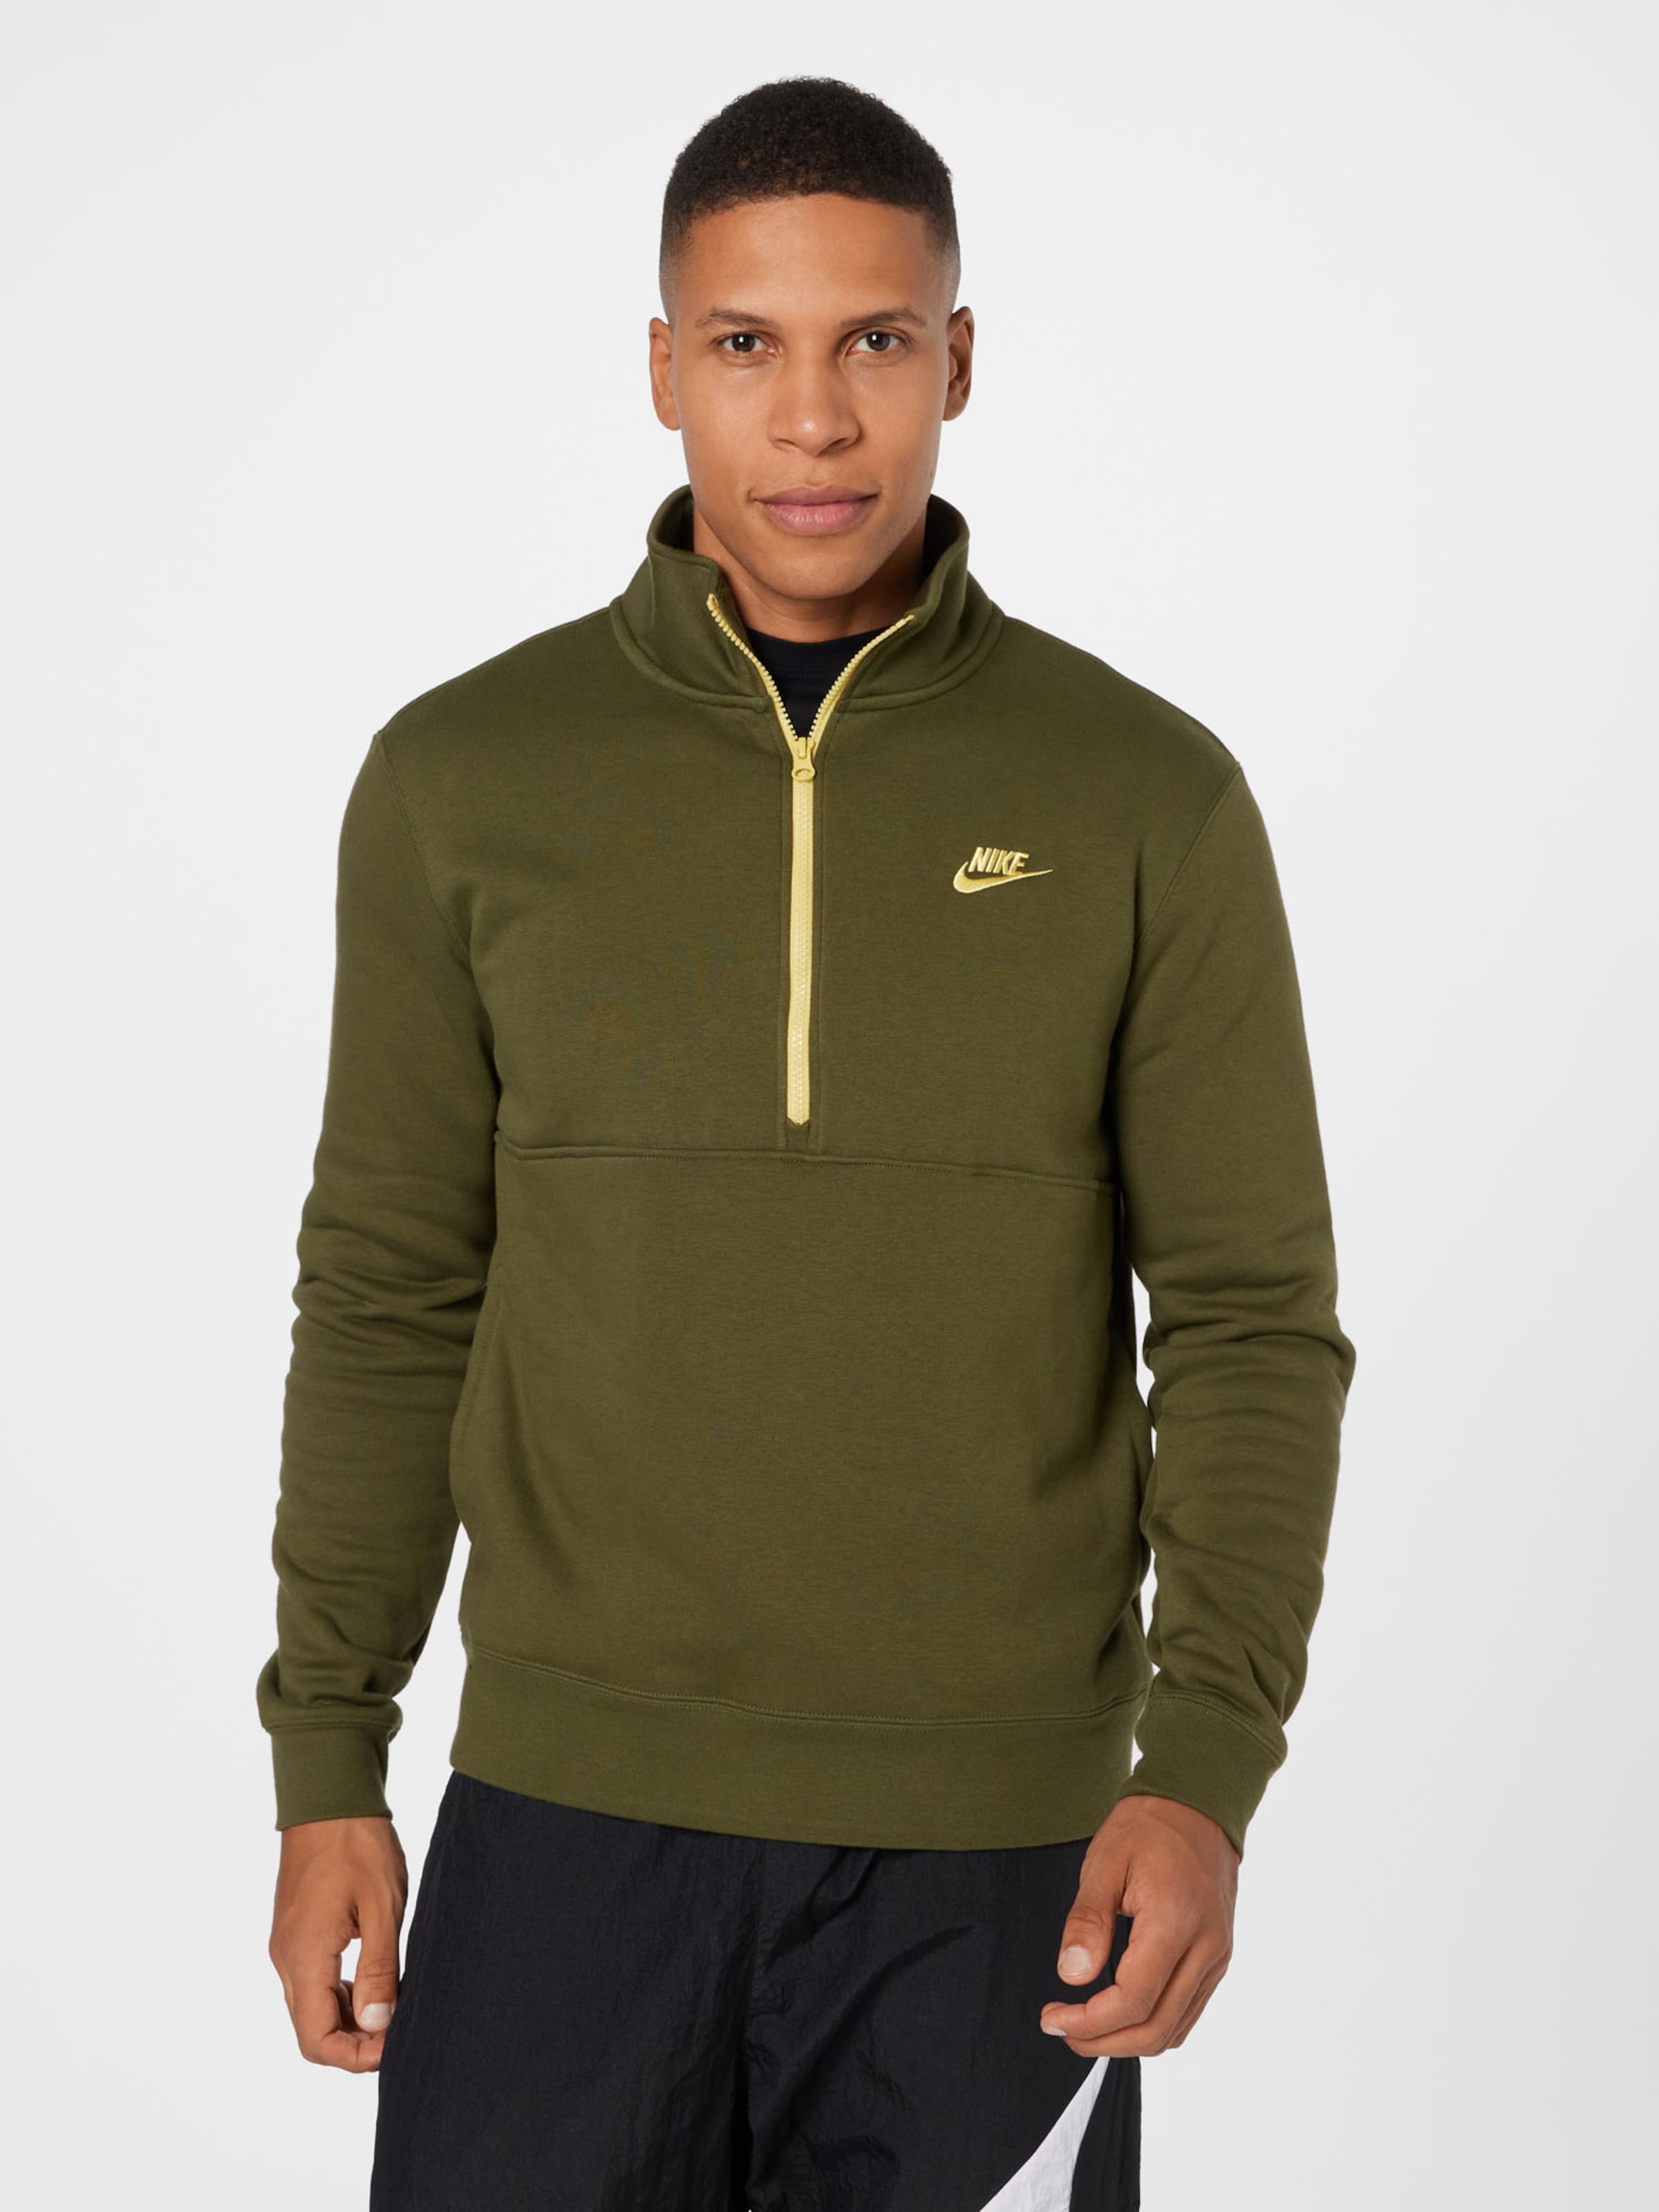 Männer Sweat Nike Sportswear Sweatshirt in Grün - KZ43375